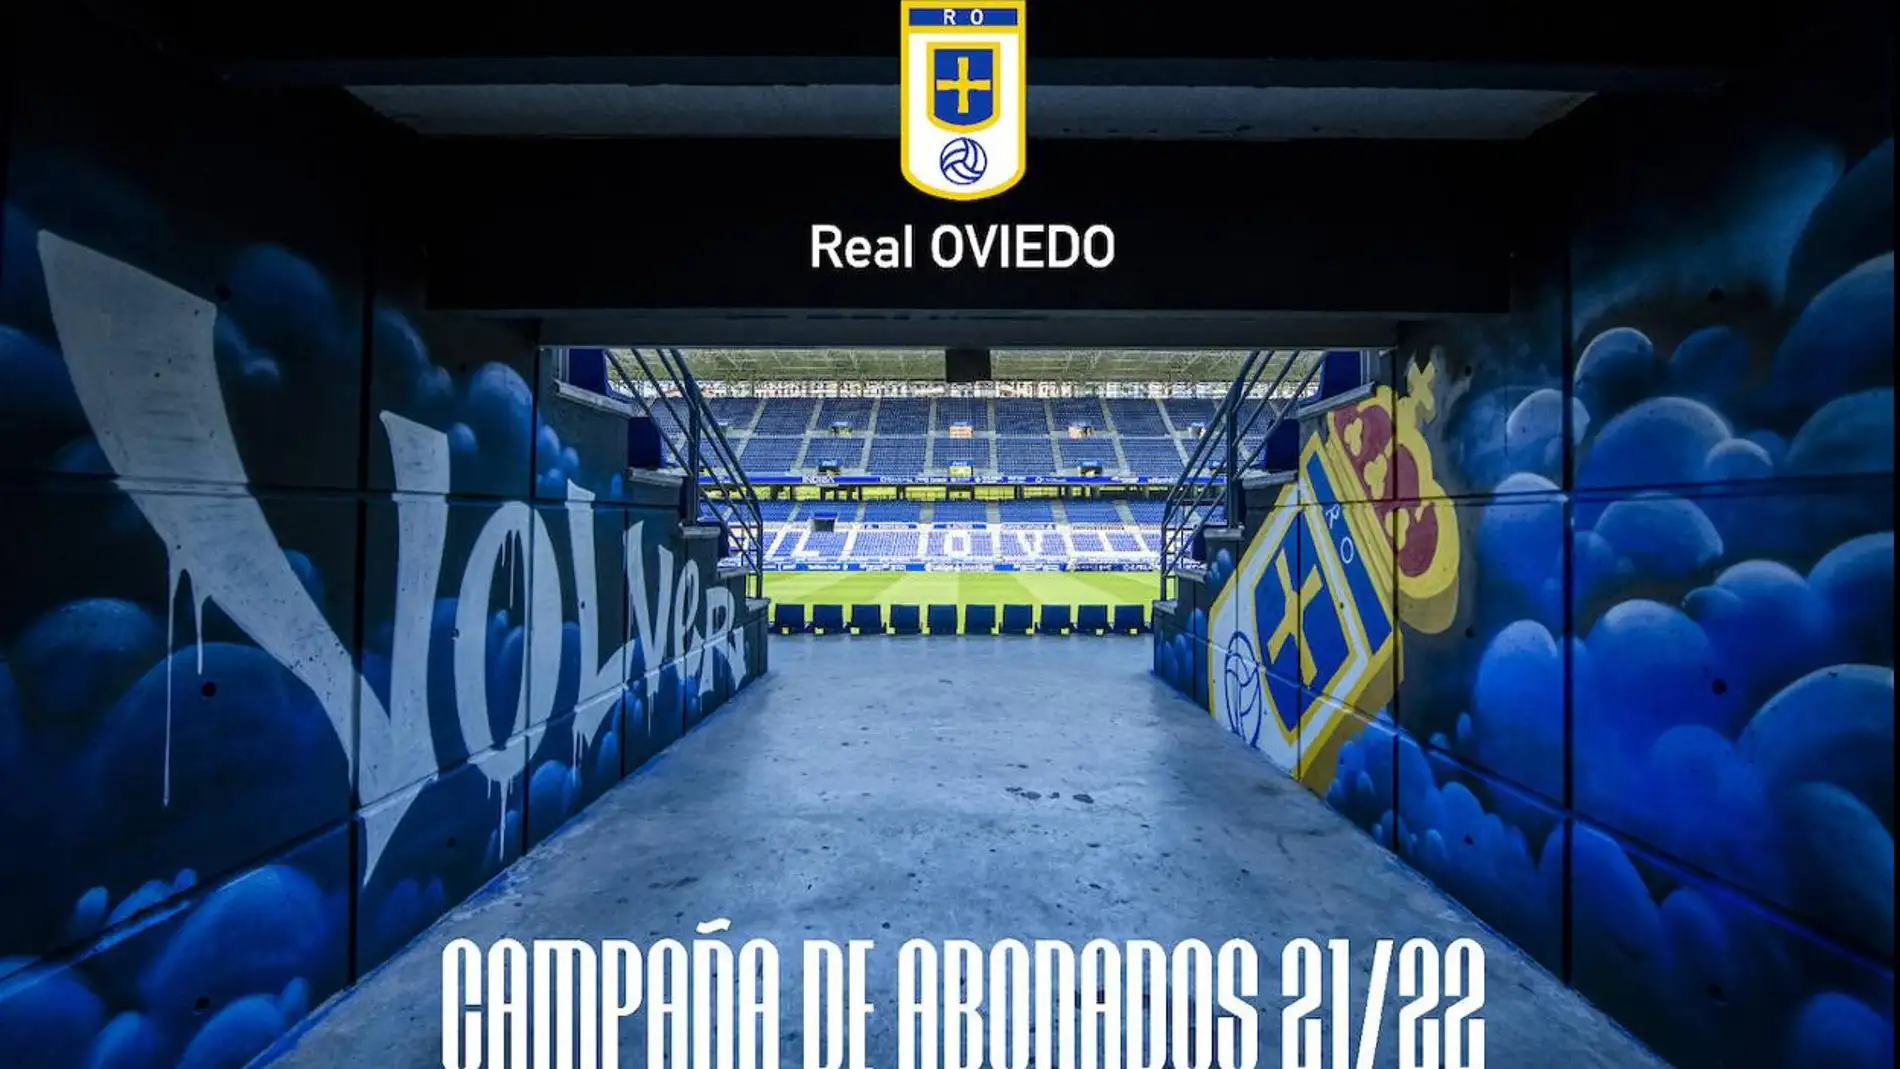 Campaña de abonados 21/22 - Real Oviedo.